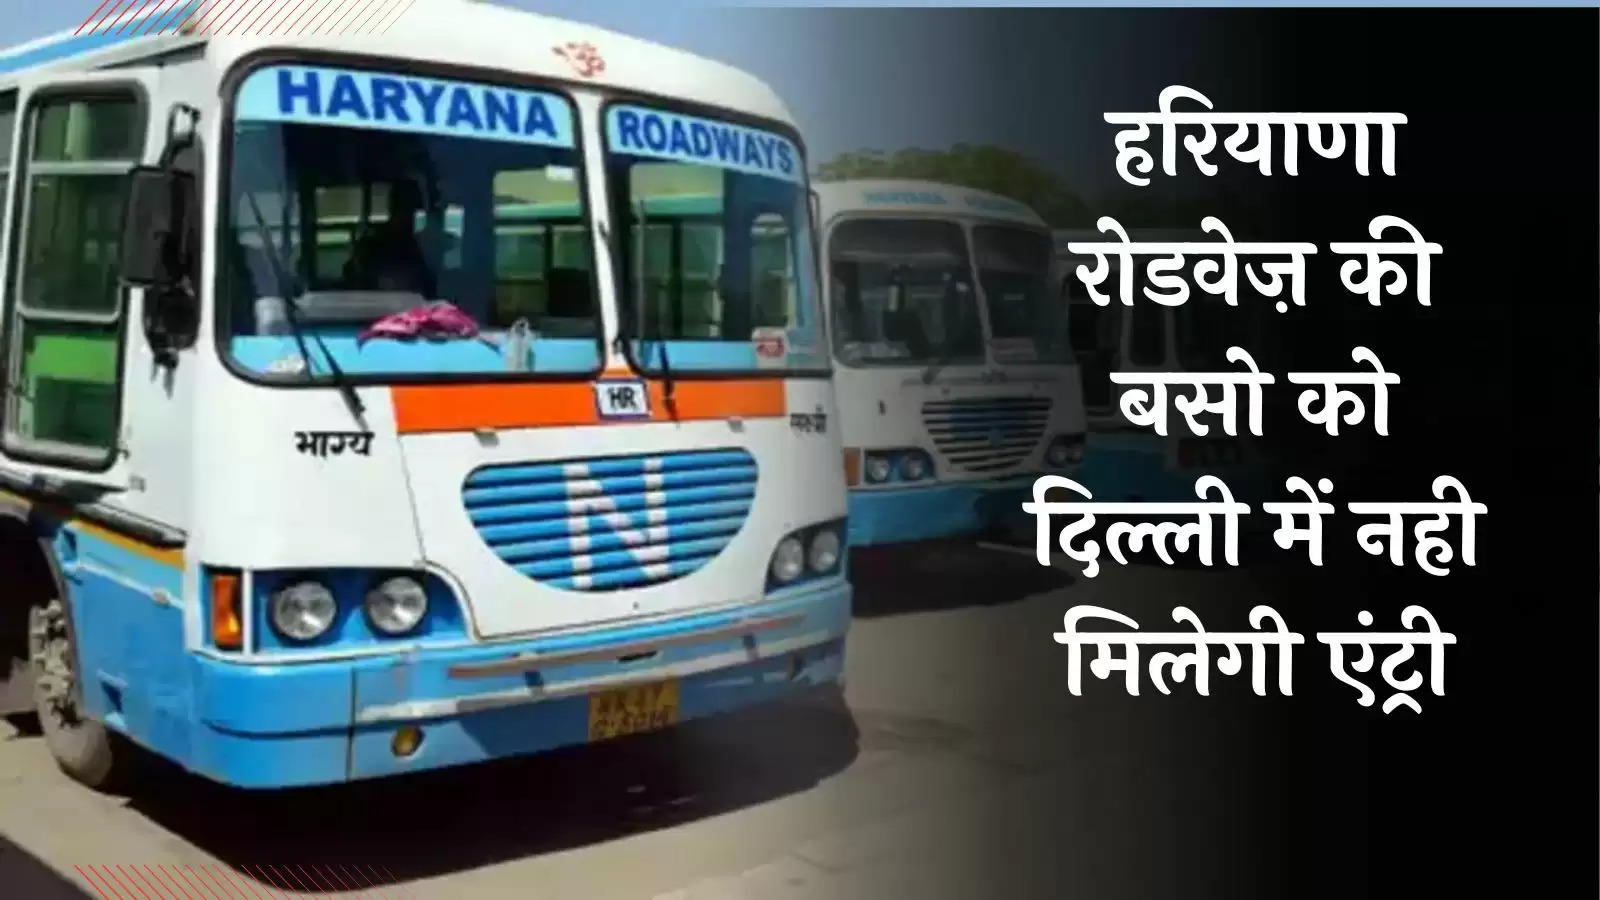 Haryana Roadways News: हरियाणा रोडवेज की बसों की दिल्ली में नो एंट्री, जानिए पूरी खबर